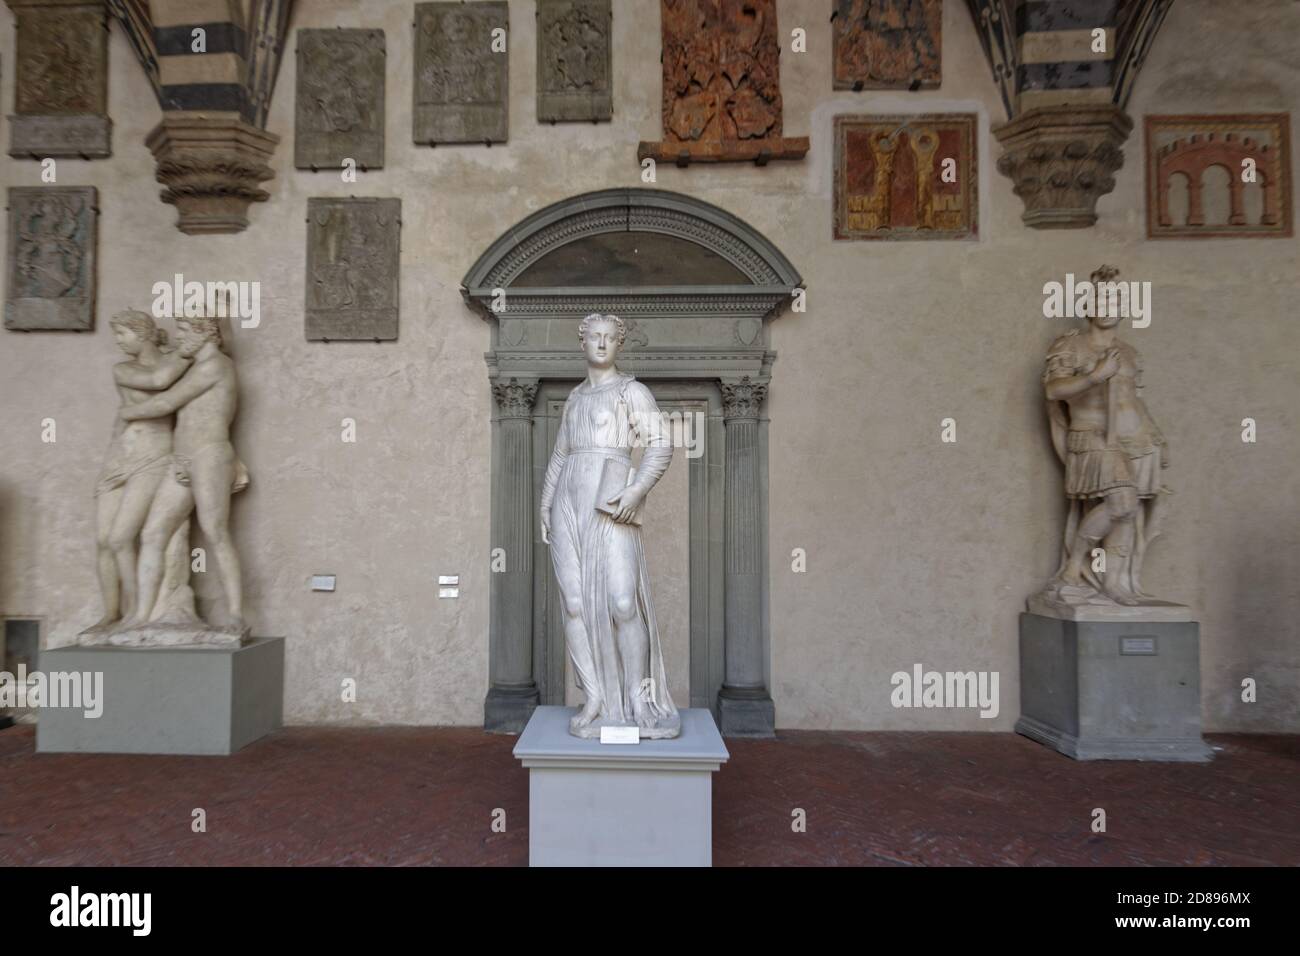 Skulpturen und Reliefs im Palazzo del Bargello in Florenz, Italien. Erbaut im XIII Jahrhundert, wurde der Palast als Nationalmuseum im Jahr 1865 eröffnet Stockfoto